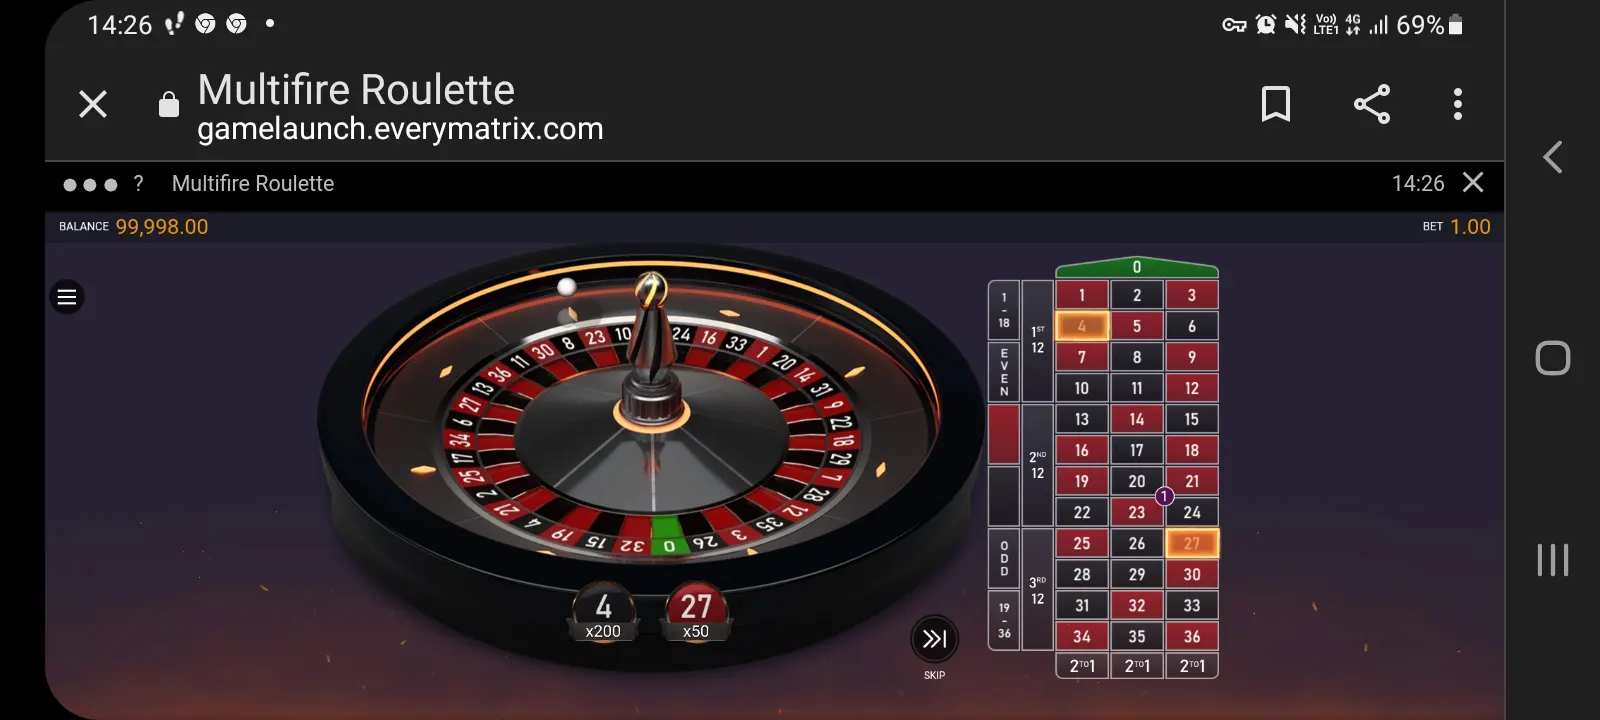 Genesis casino app screenshot 4